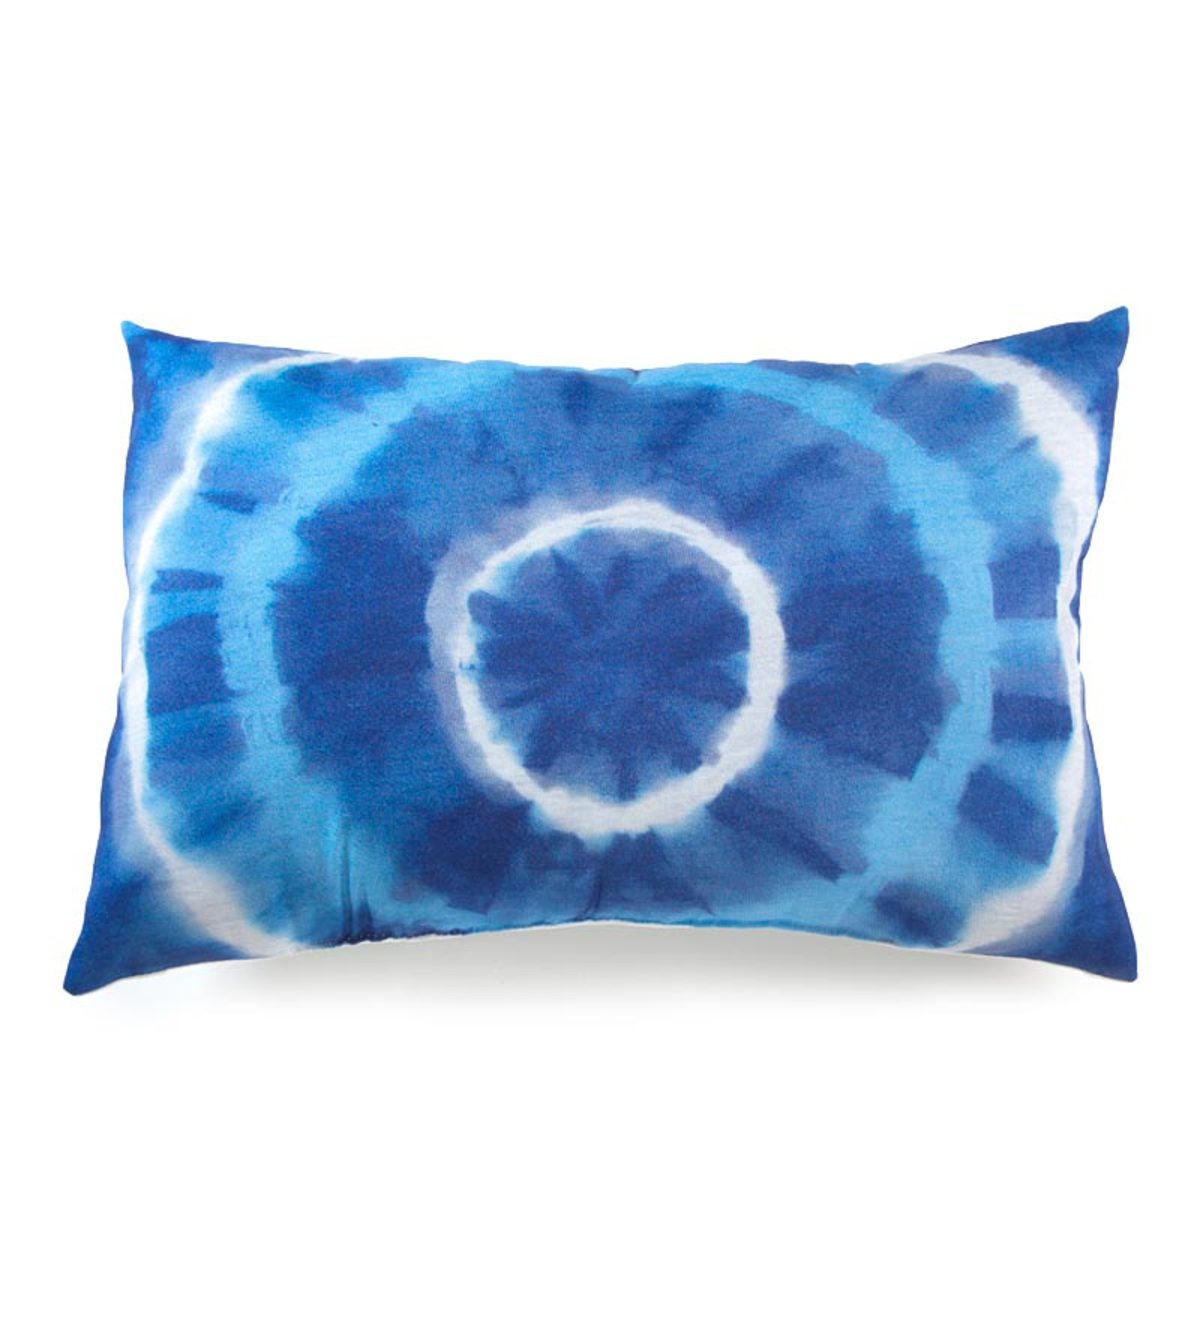 Blue Tie-Dye Photo Printed Pillow